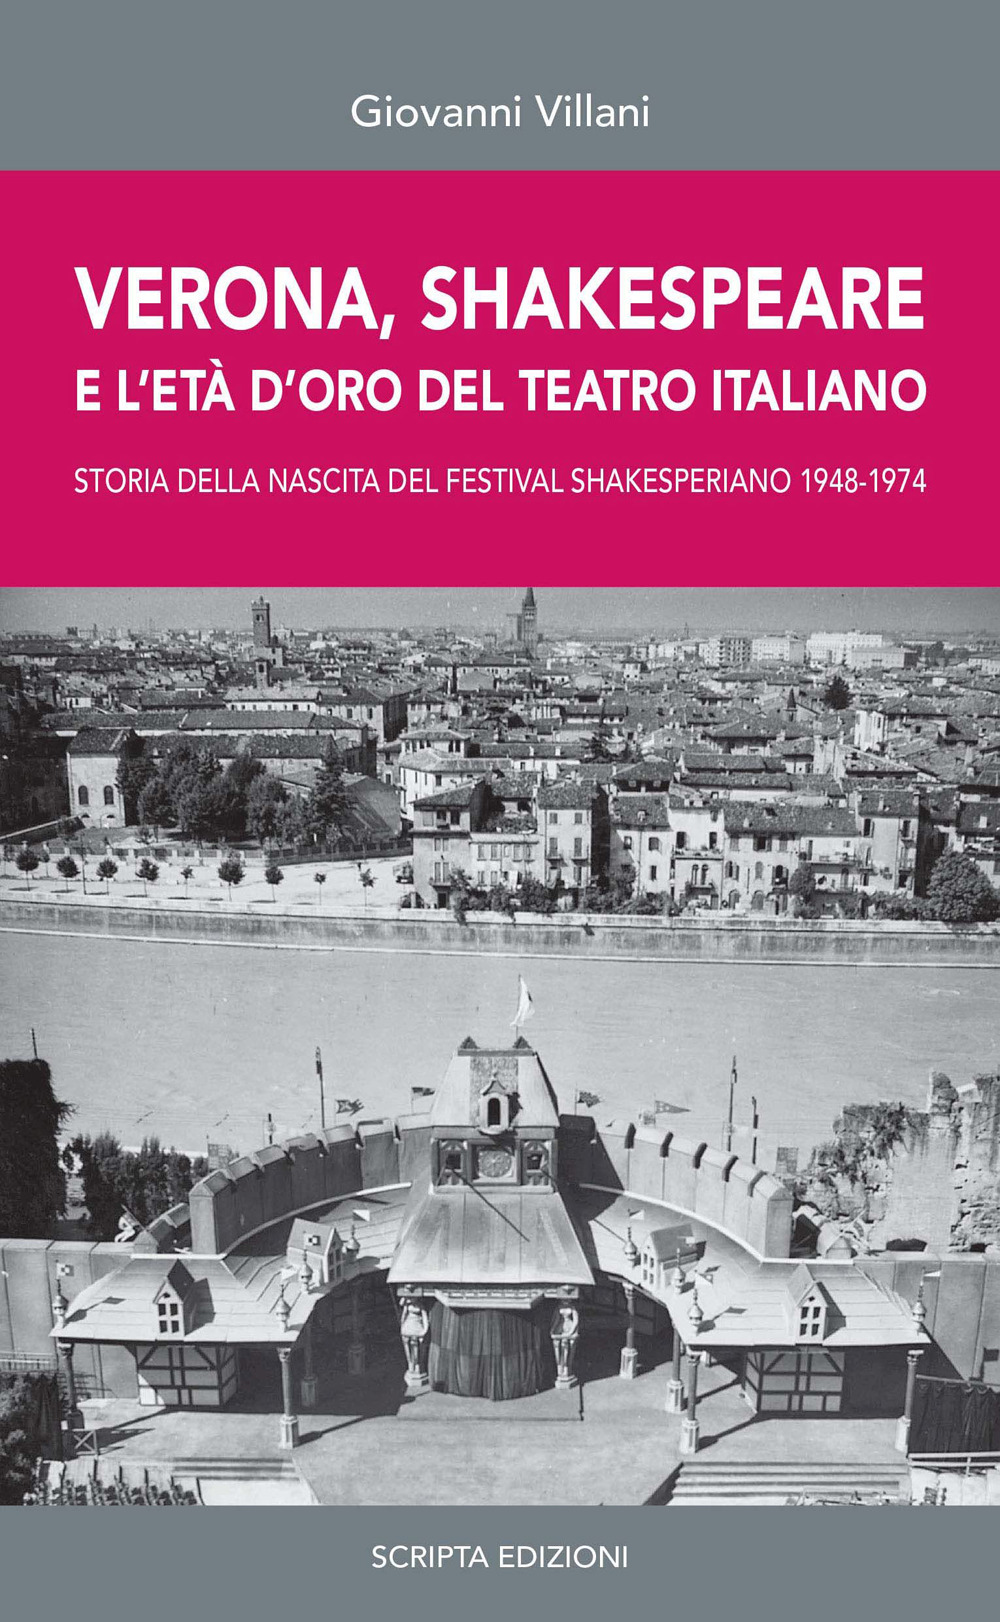 Verona, Shakespeare e l'età d'oro del Teatro Romano. Storia della nascita del Festival Shakesperiano (1948-1974)